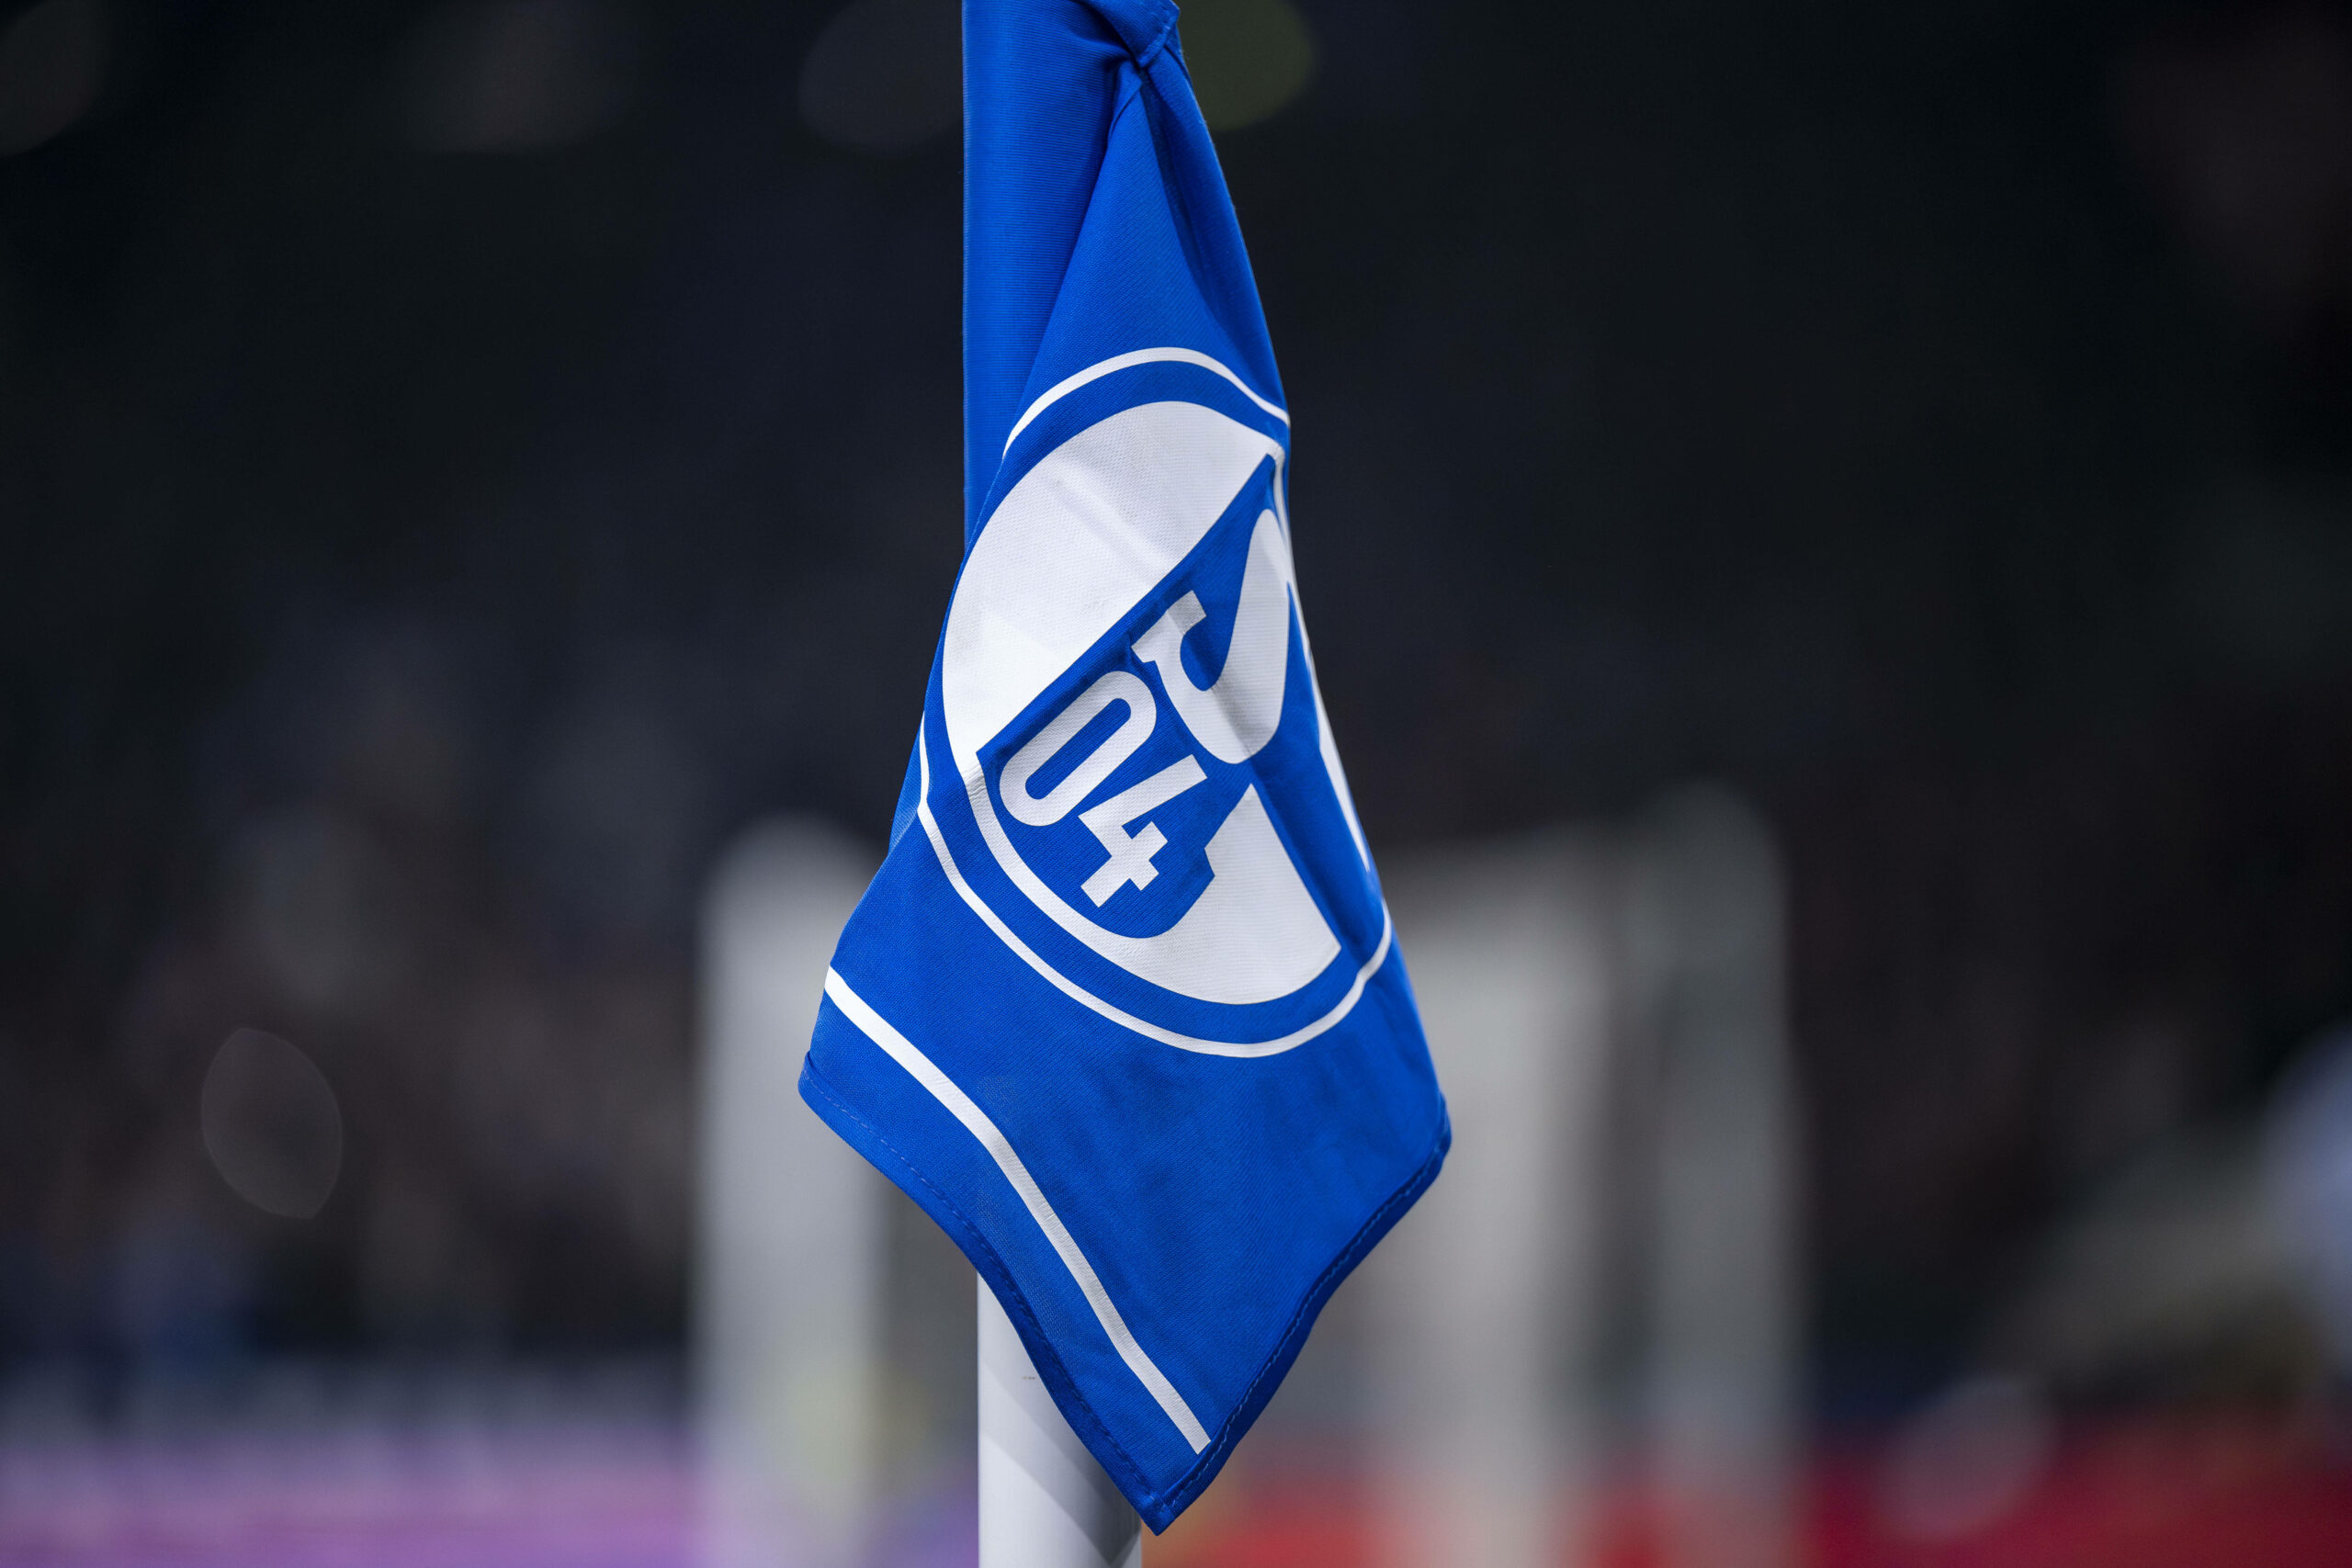 Das Logo von Schalke 04 auf einer Eckfahne